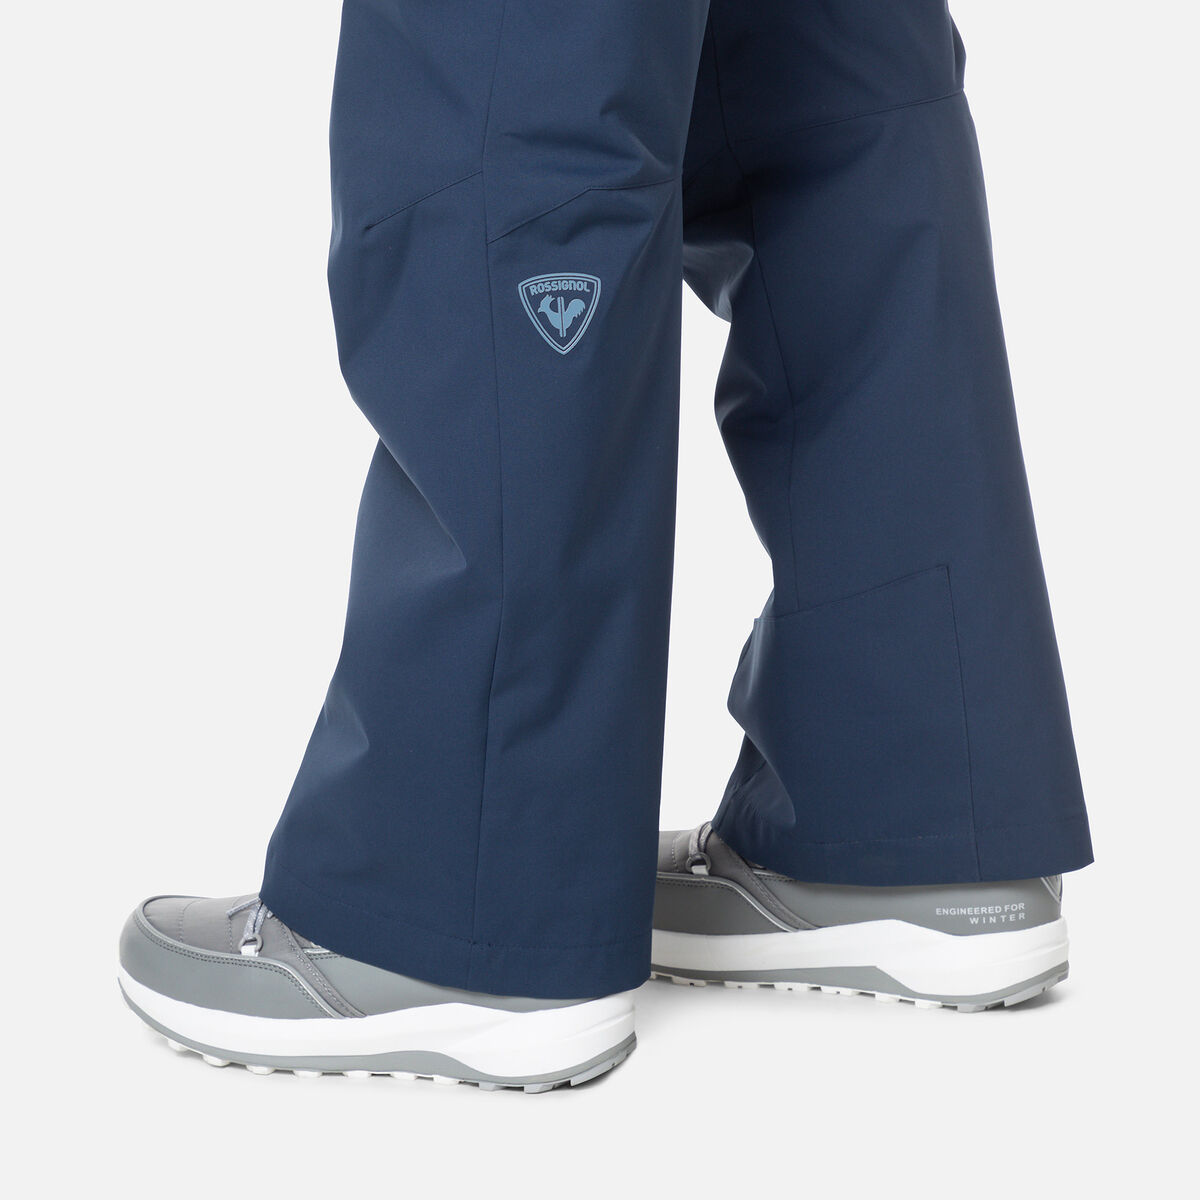 Rossignol Men's Siz Ski Pants blue